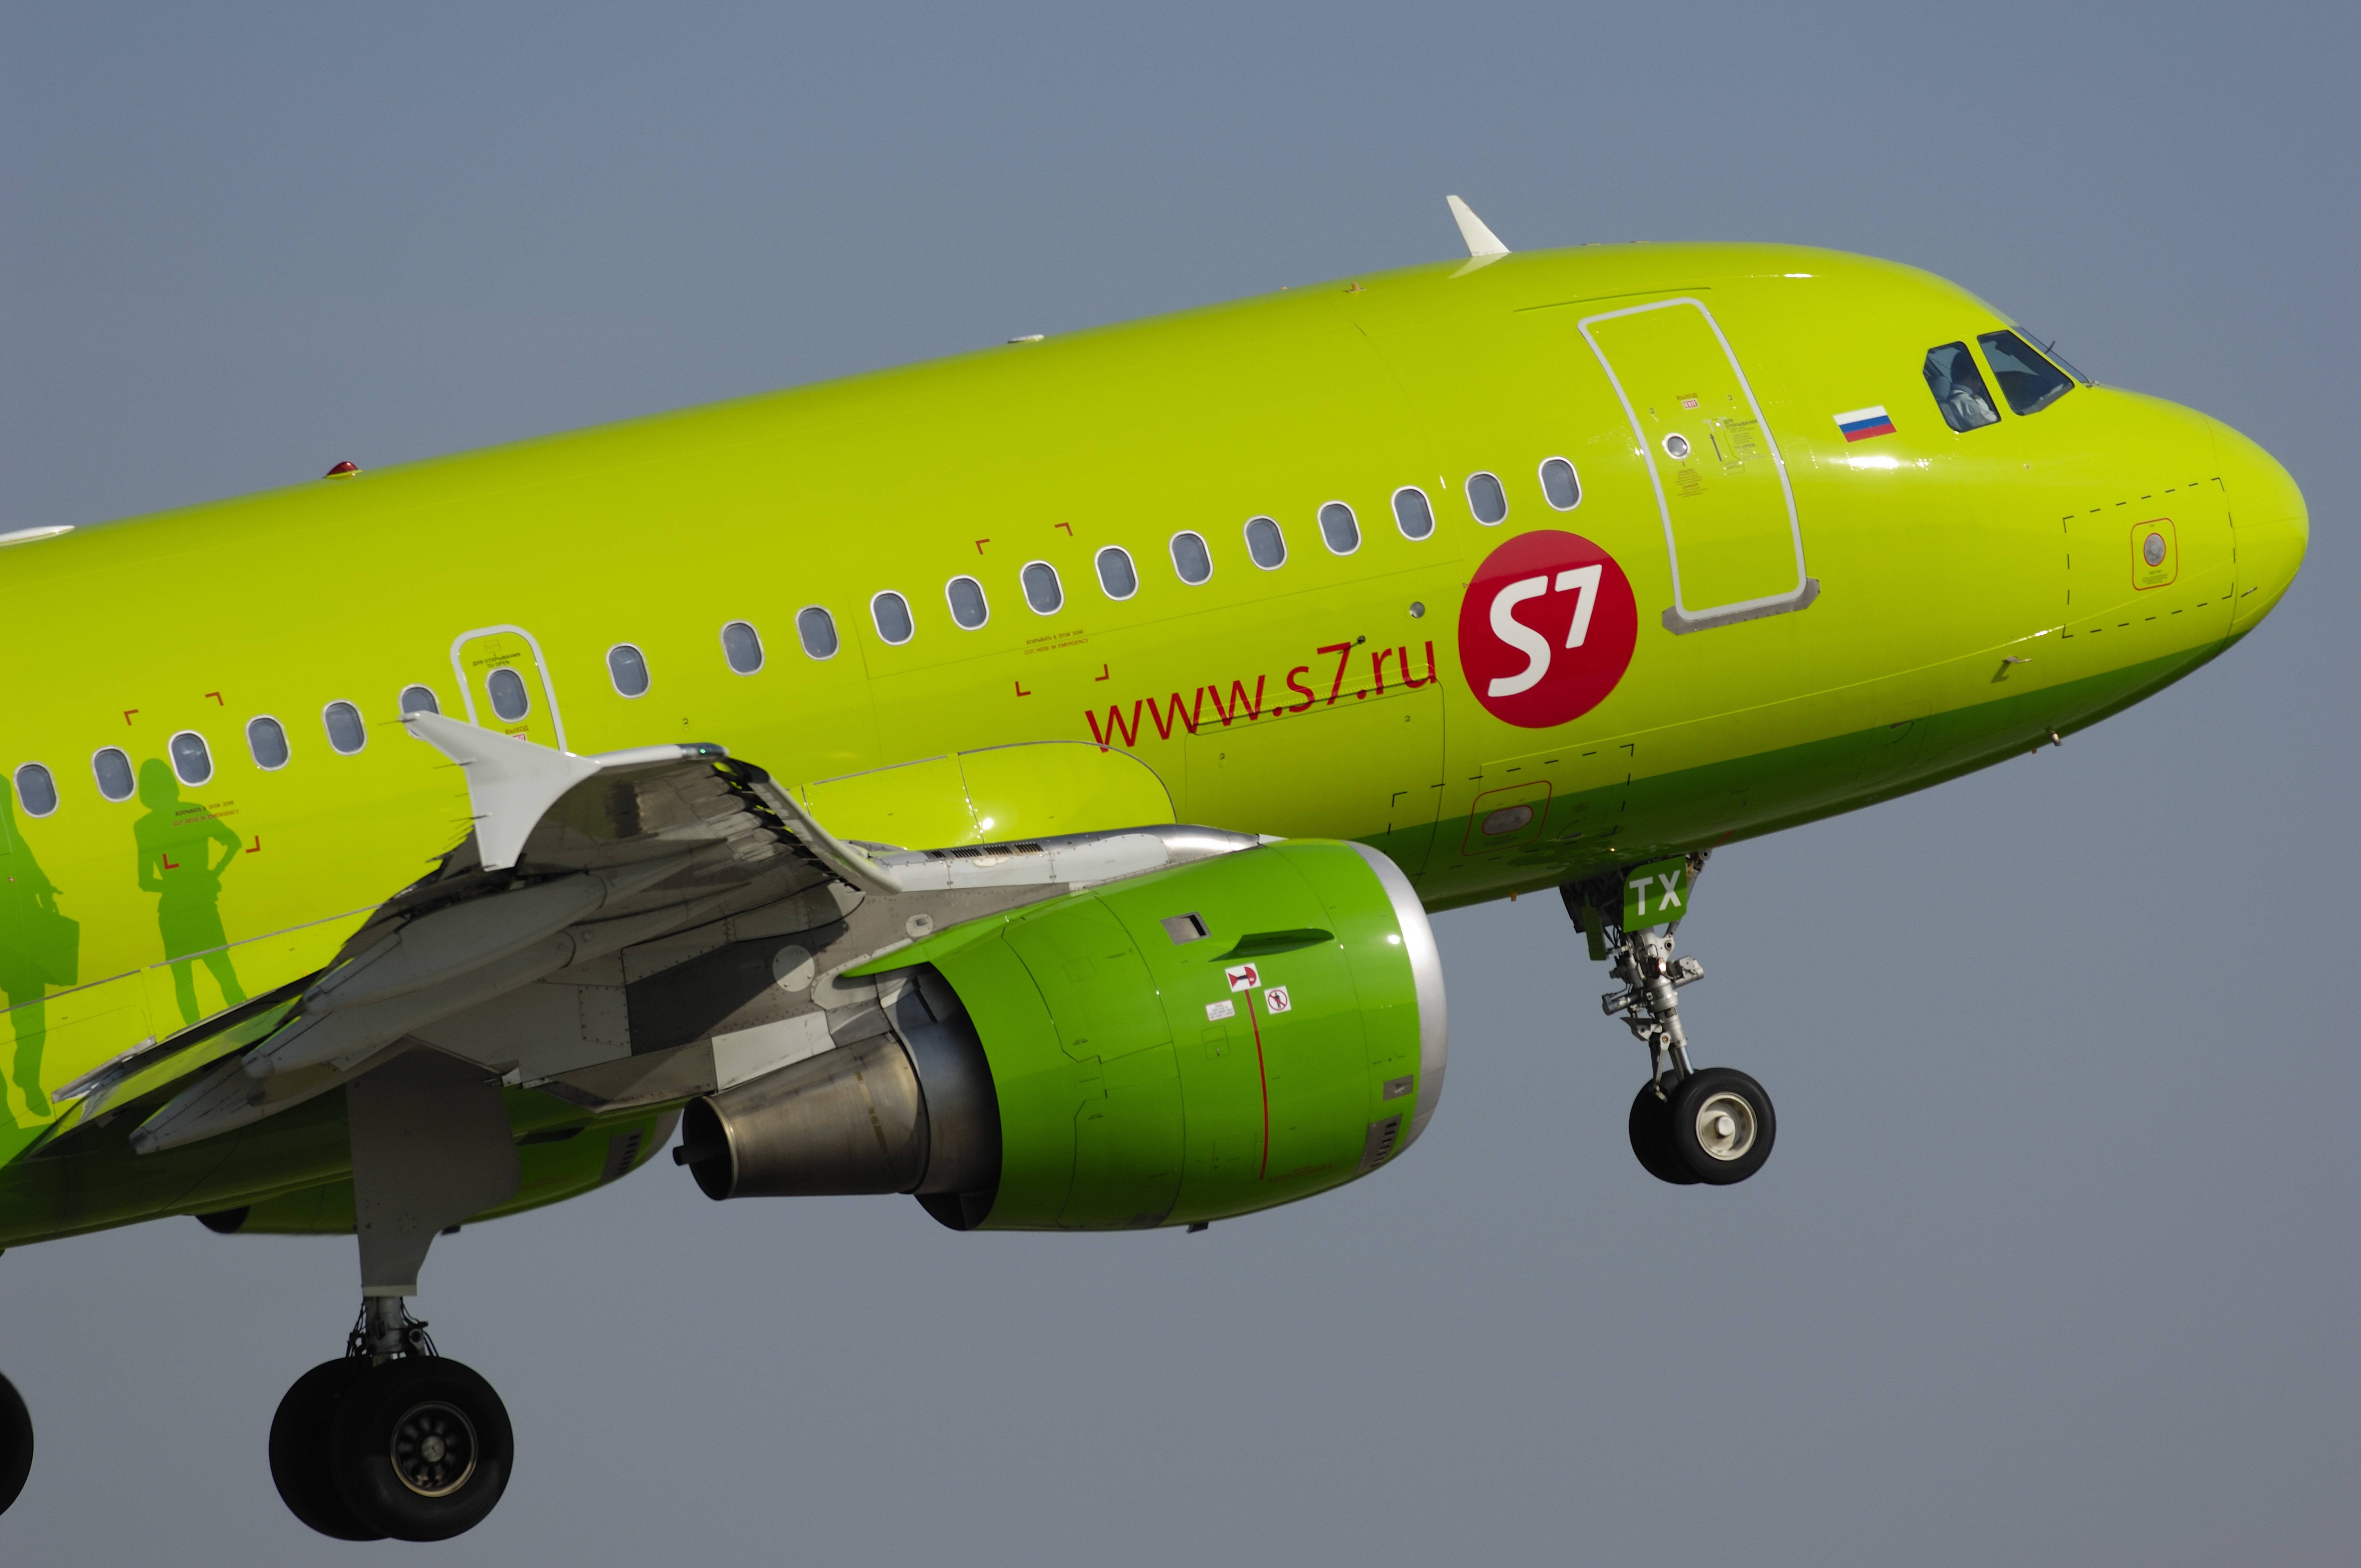 Авиакомпания s7 — правила провоза багажа, авиабилеты, отзывы на mego.travel